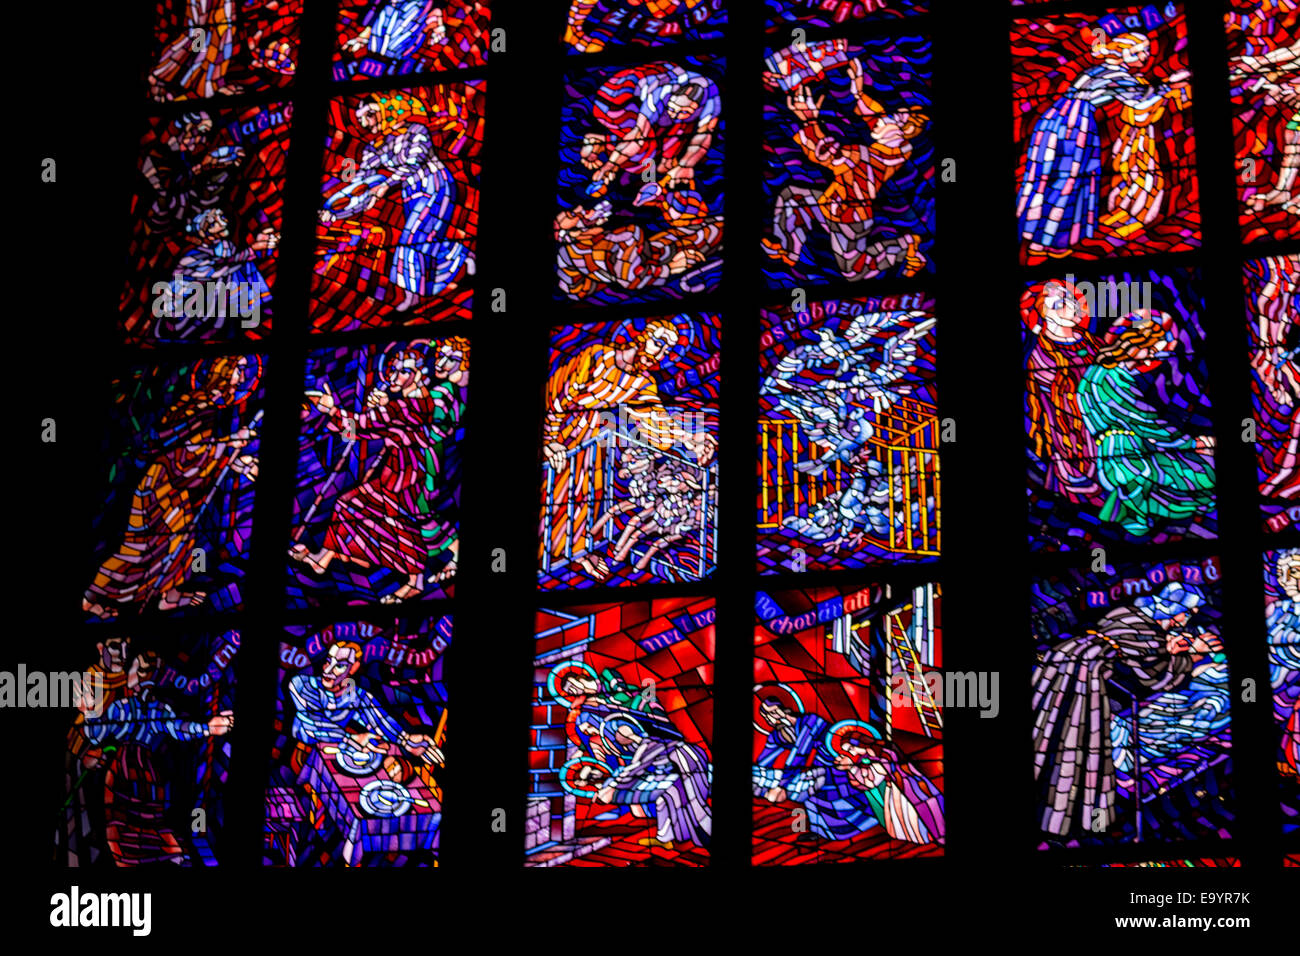 Ventana de etiqueta la transparencia dentro de la catedral de San Vito de Praga, una iglesia con torres góticas oscuro custodiado por gárgola: Foto de stock